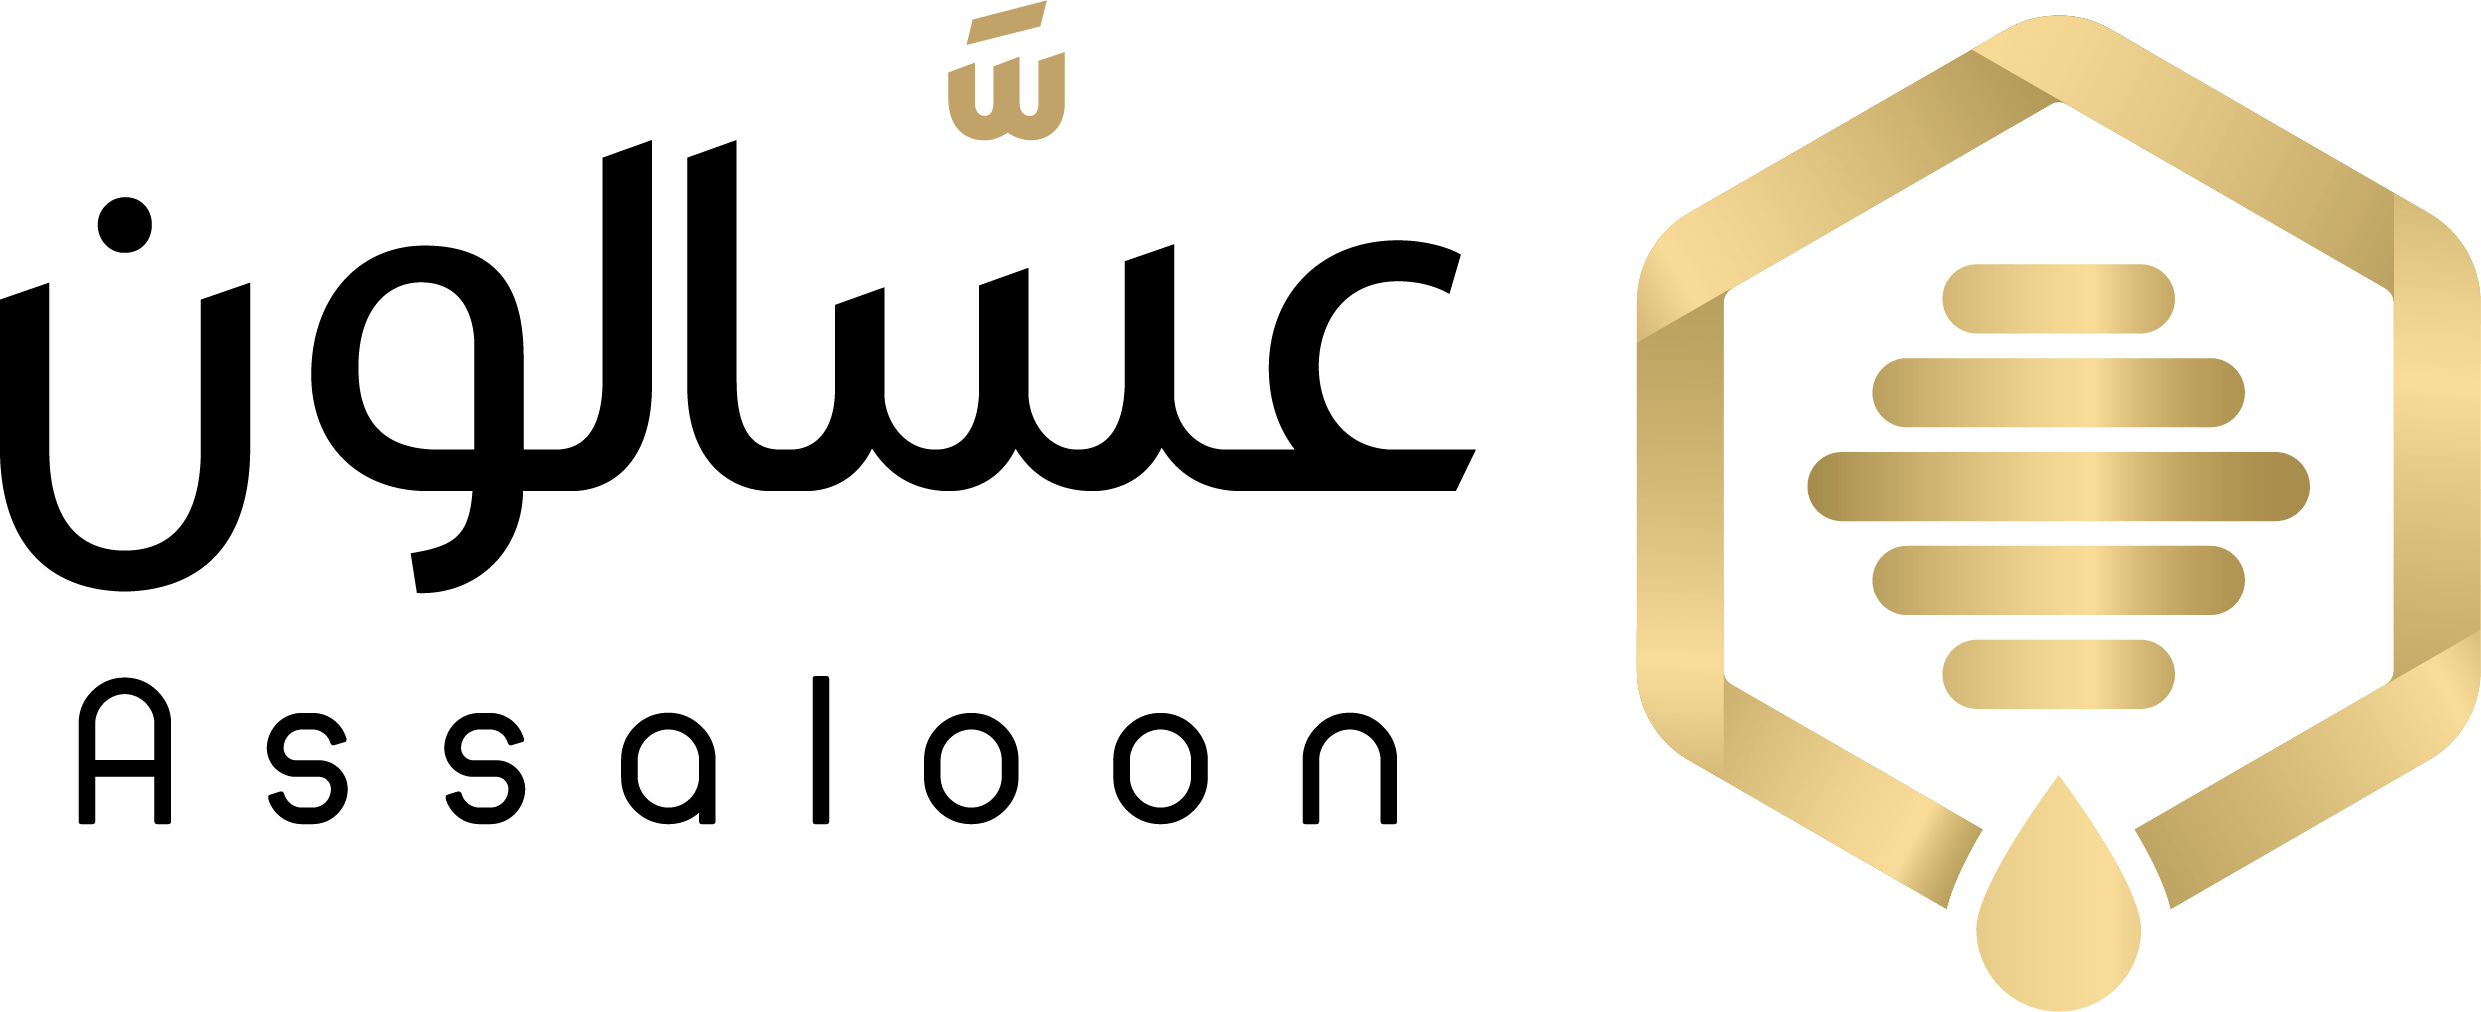 متجر عسالون logo